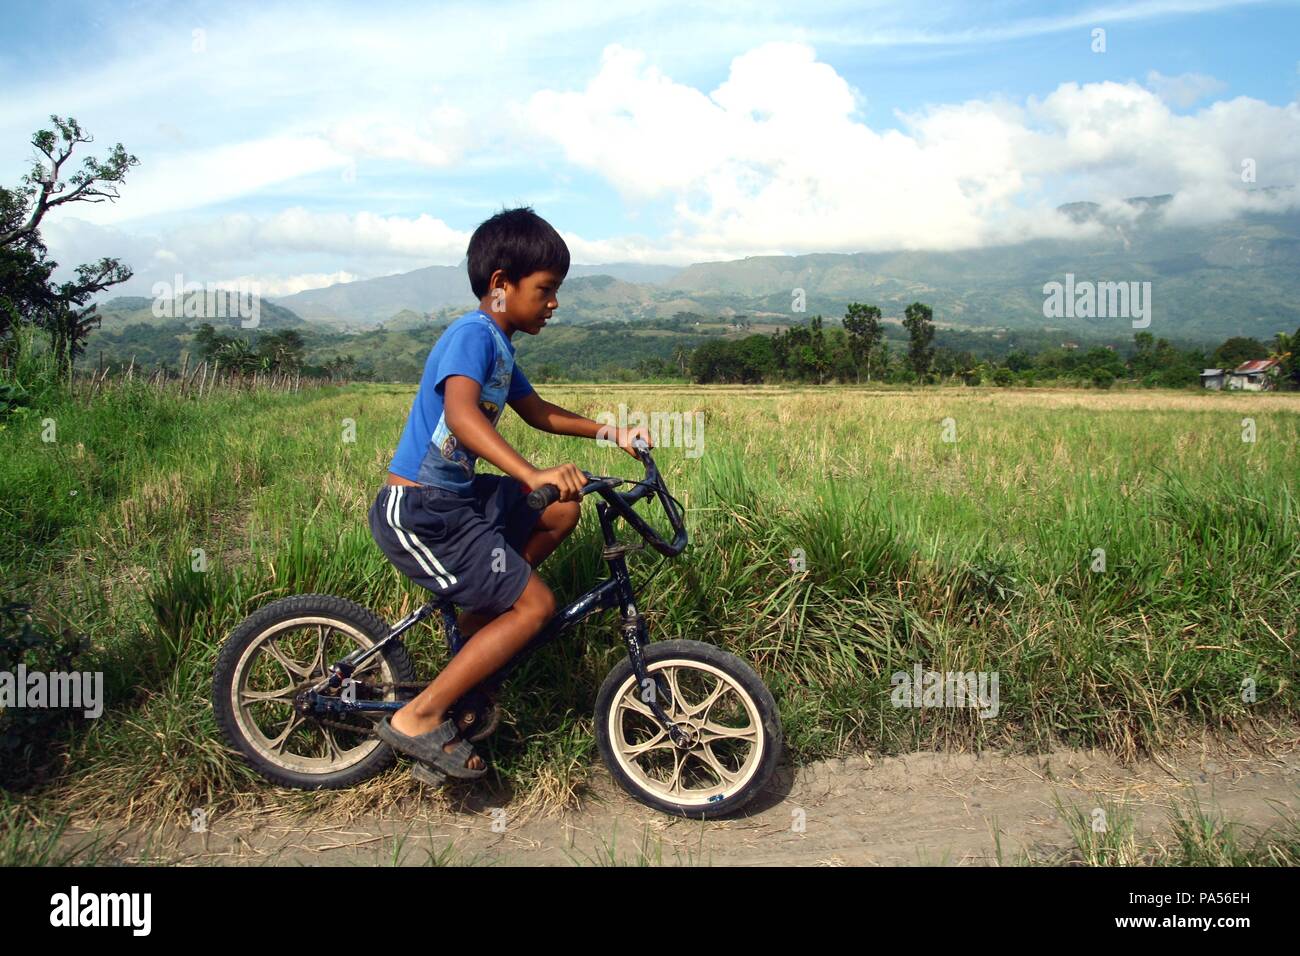 La ville d'Iloilo, PHILIPPINES - le 29 octobre 2015 : un jeune garçon monte un vélo sur un chemin de béton à côté d'une pelouse. Banque D'Images